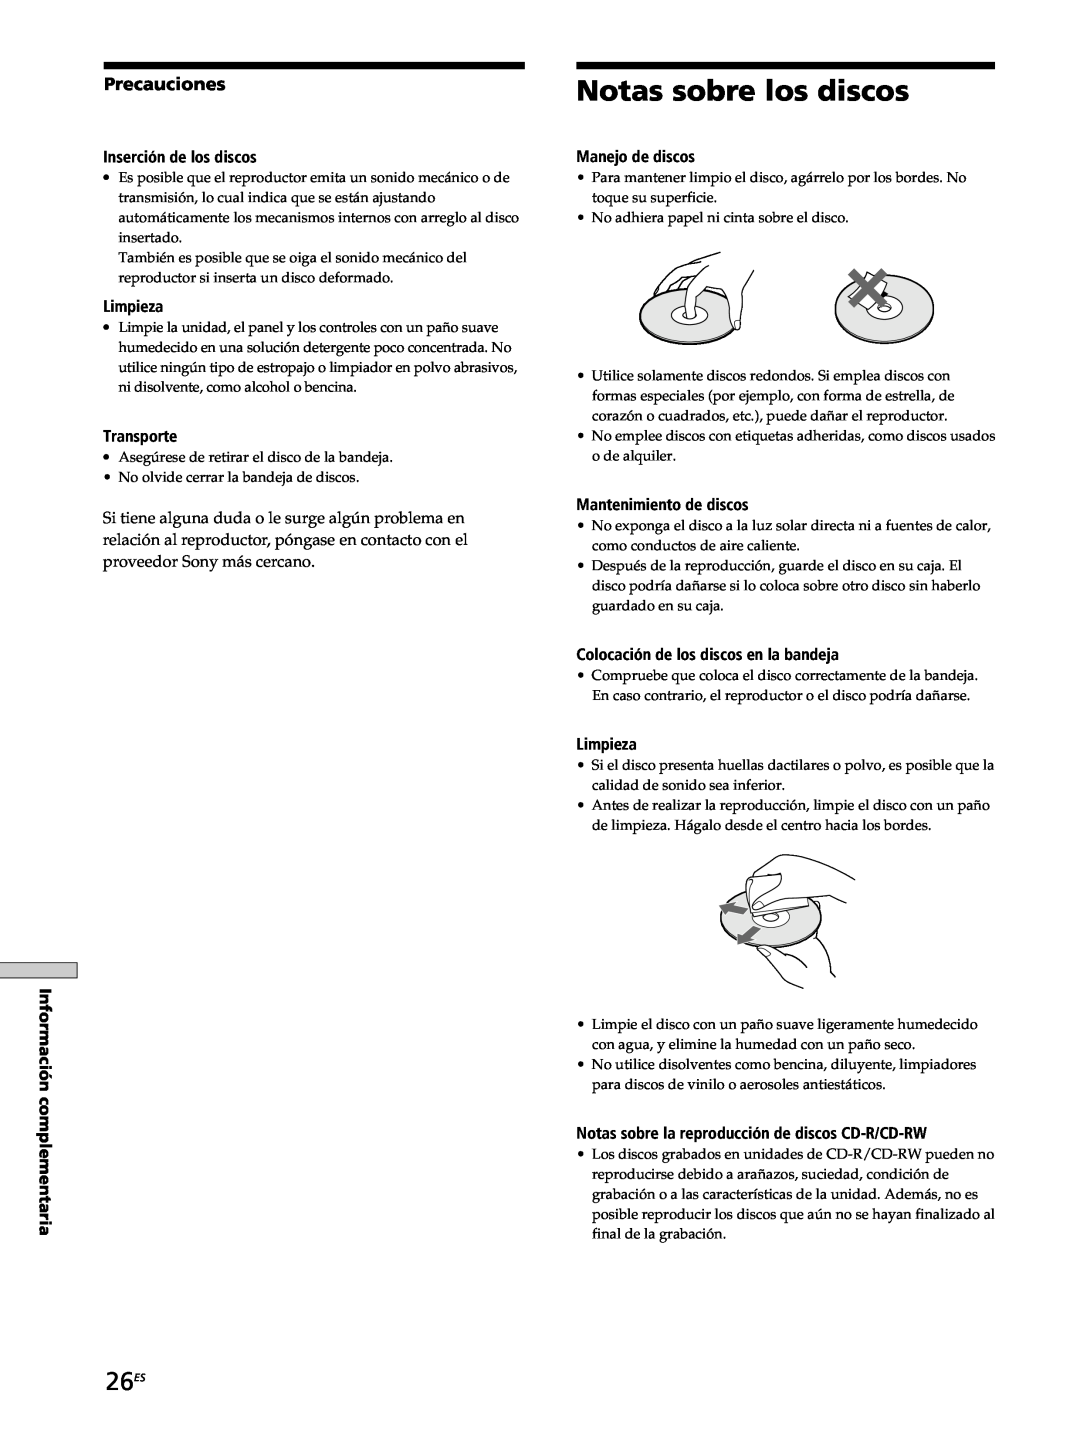 Sony SCD-XB770 operating instructions Notas sobre los discos, 26ES, Precauciones 